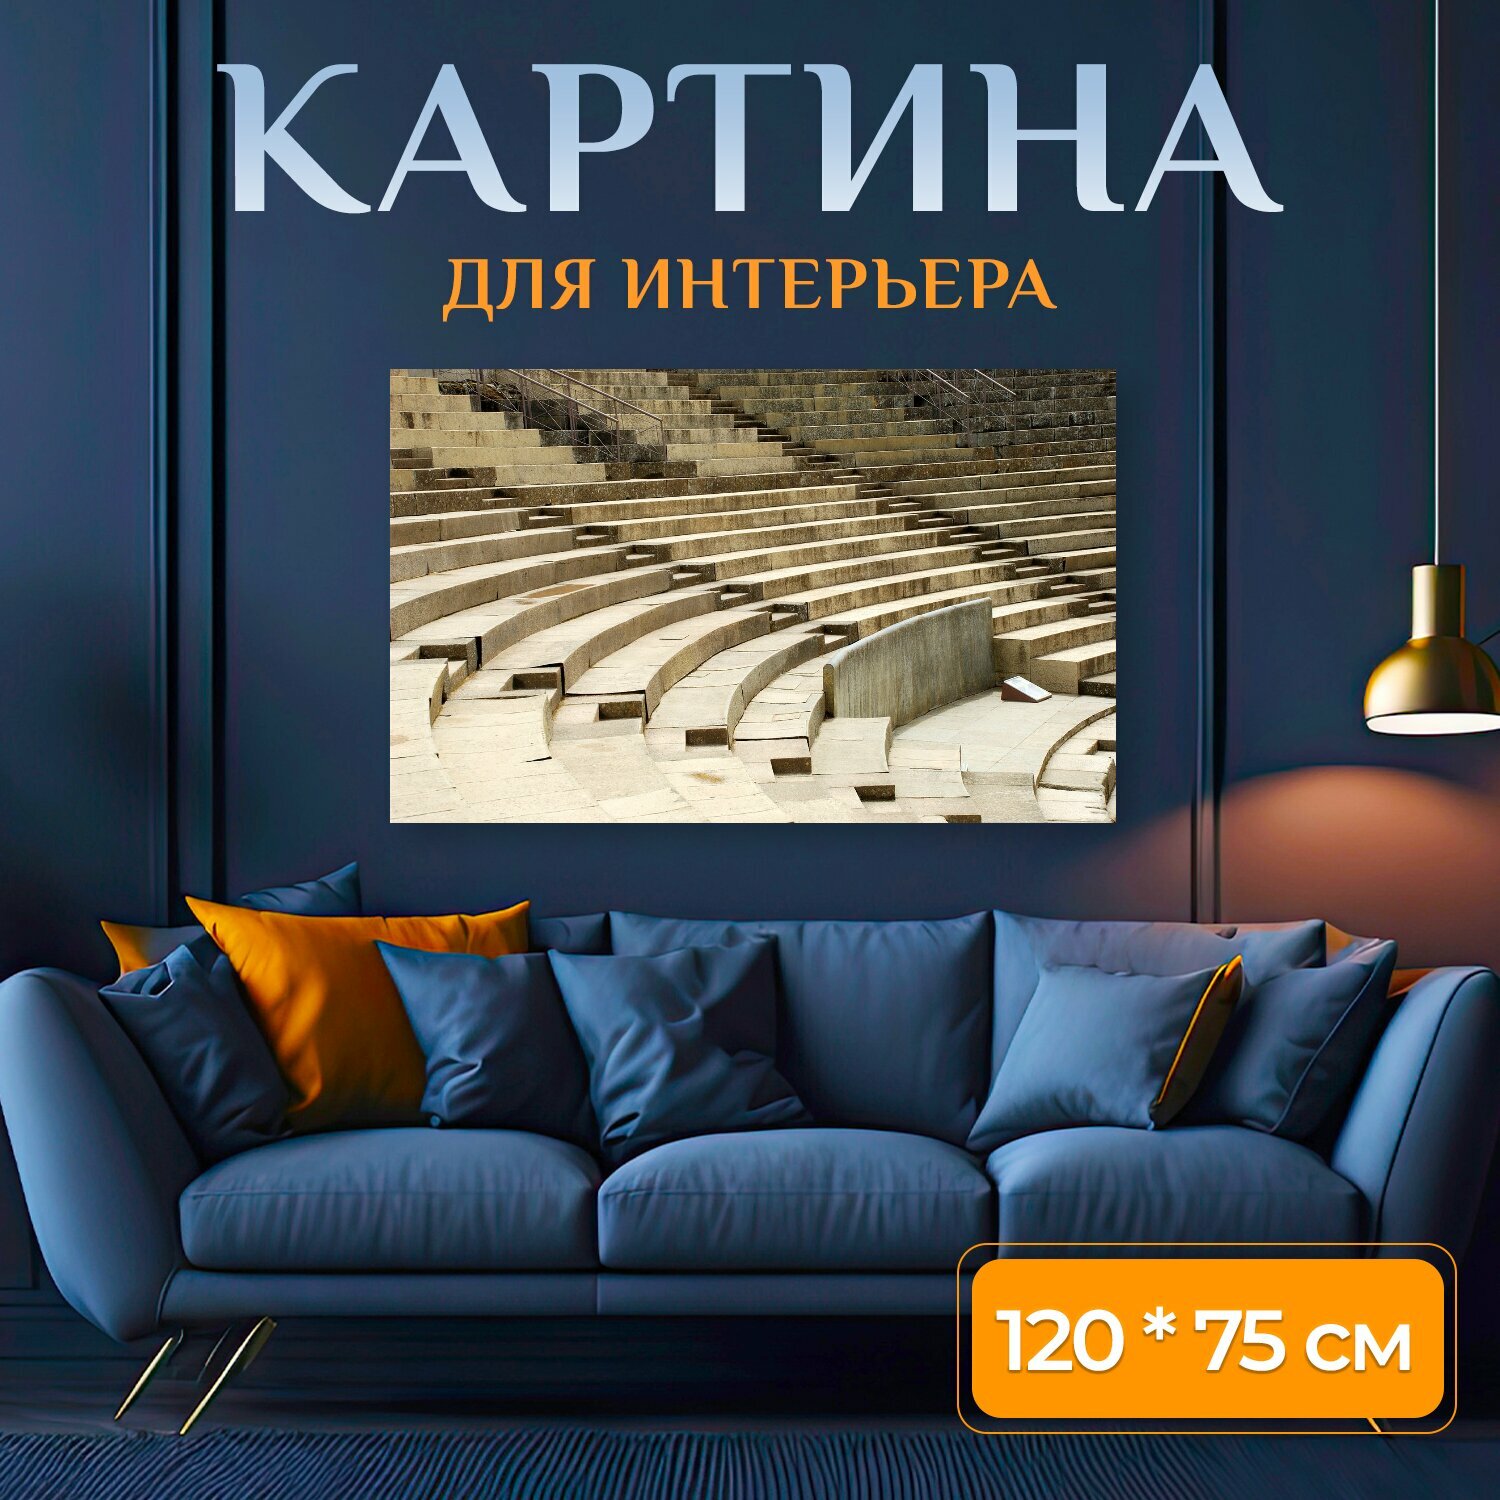 Картина на холсте "Театр, мерида, эстремадура" на подрамнике 120х75 см. для интерьера